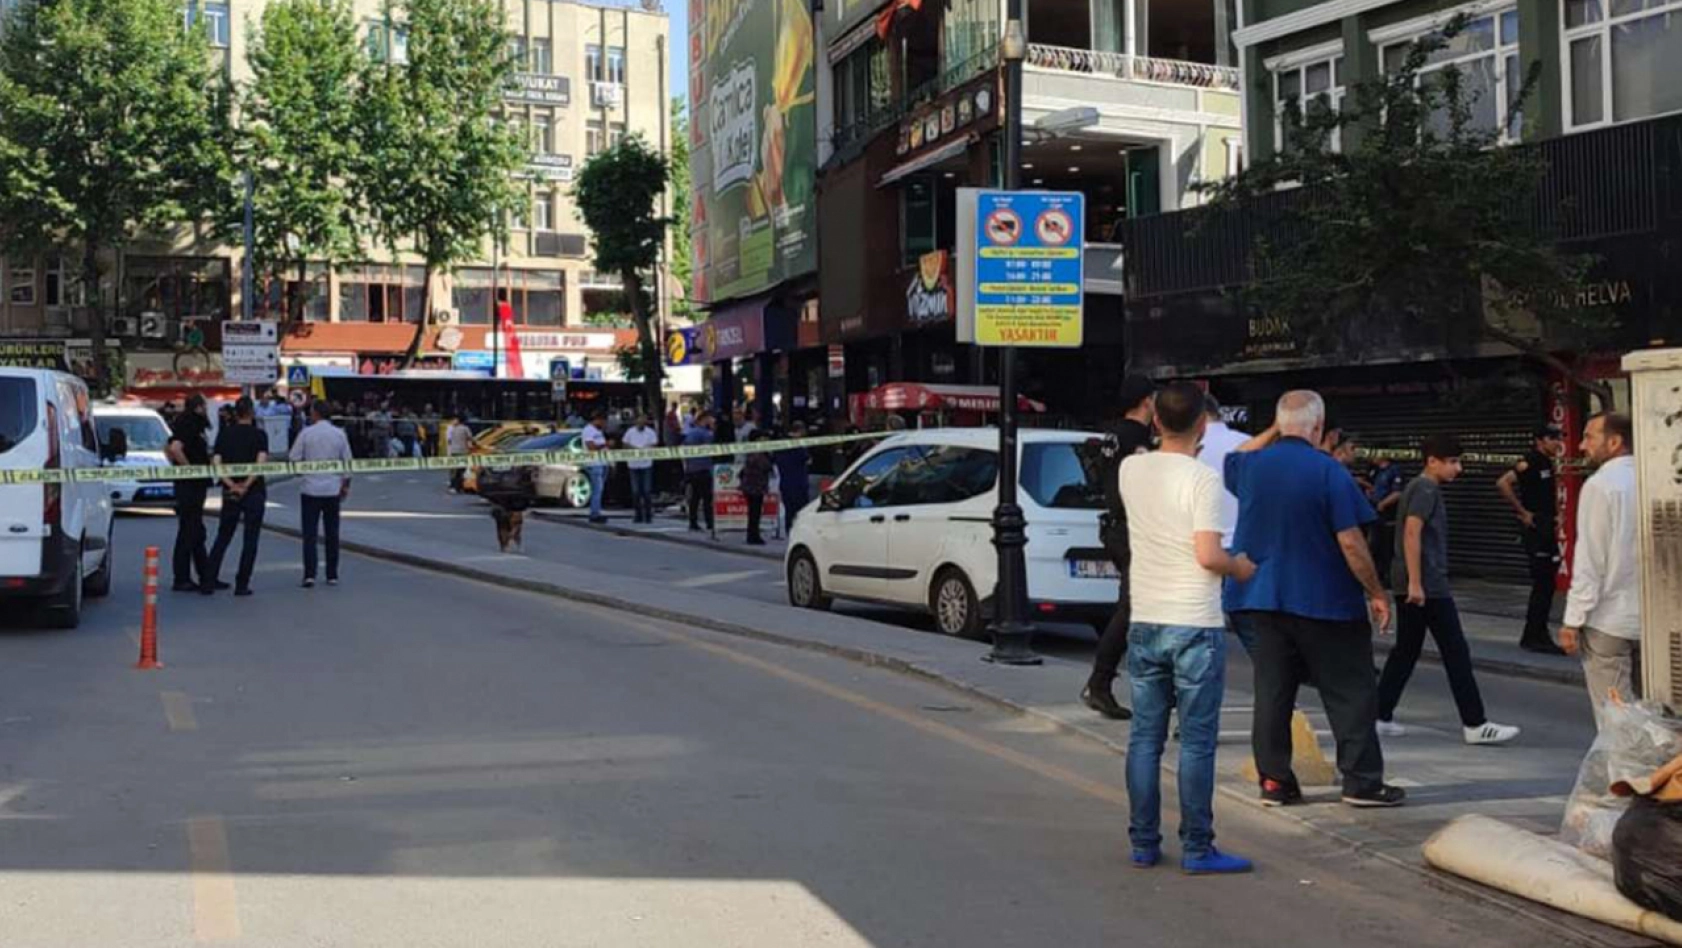 Malatya'da bir kafede 3 kişinin öldürülmesi olayının iddianamesi kabul edildi